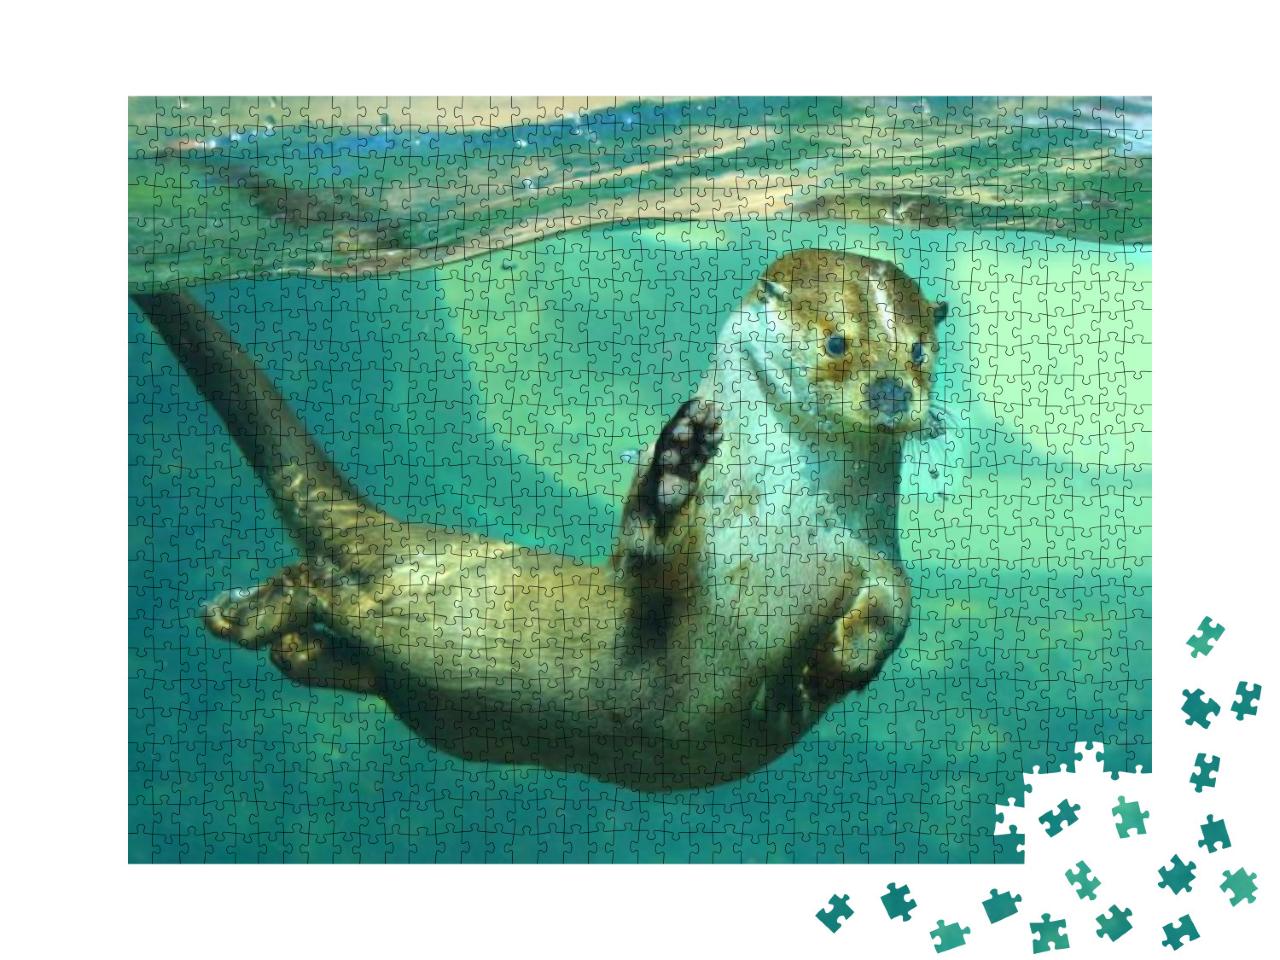 Puzzle 1000 Teile „Der Europäische Fischotter unter Wasser“